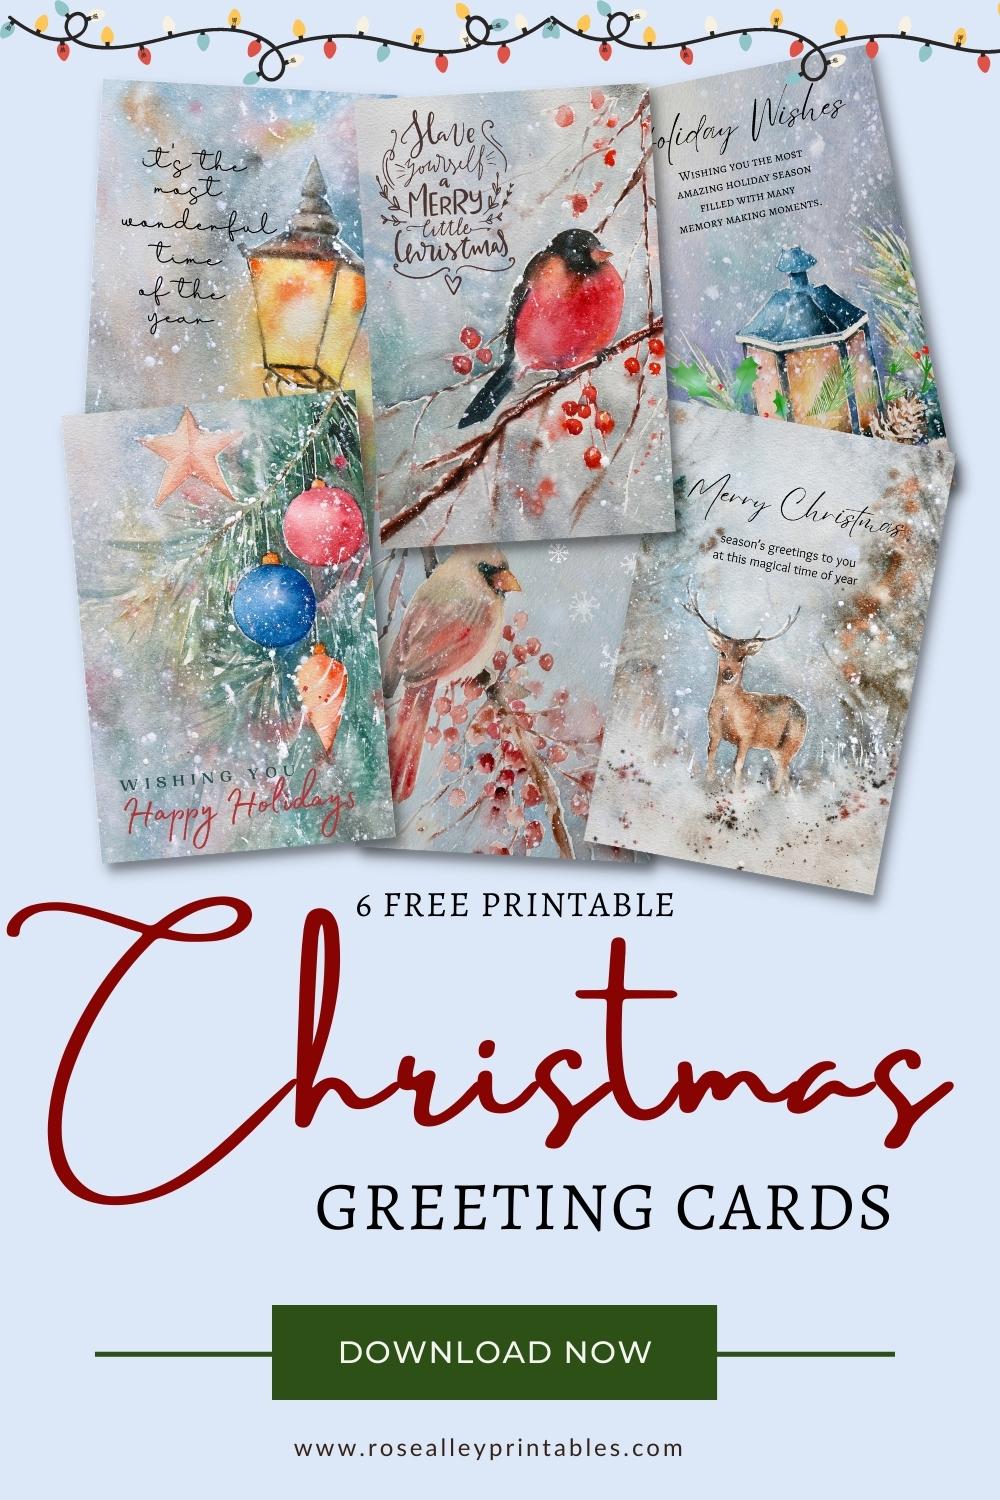 6 Free Printable Christmas Greeting Cards (Set 2)